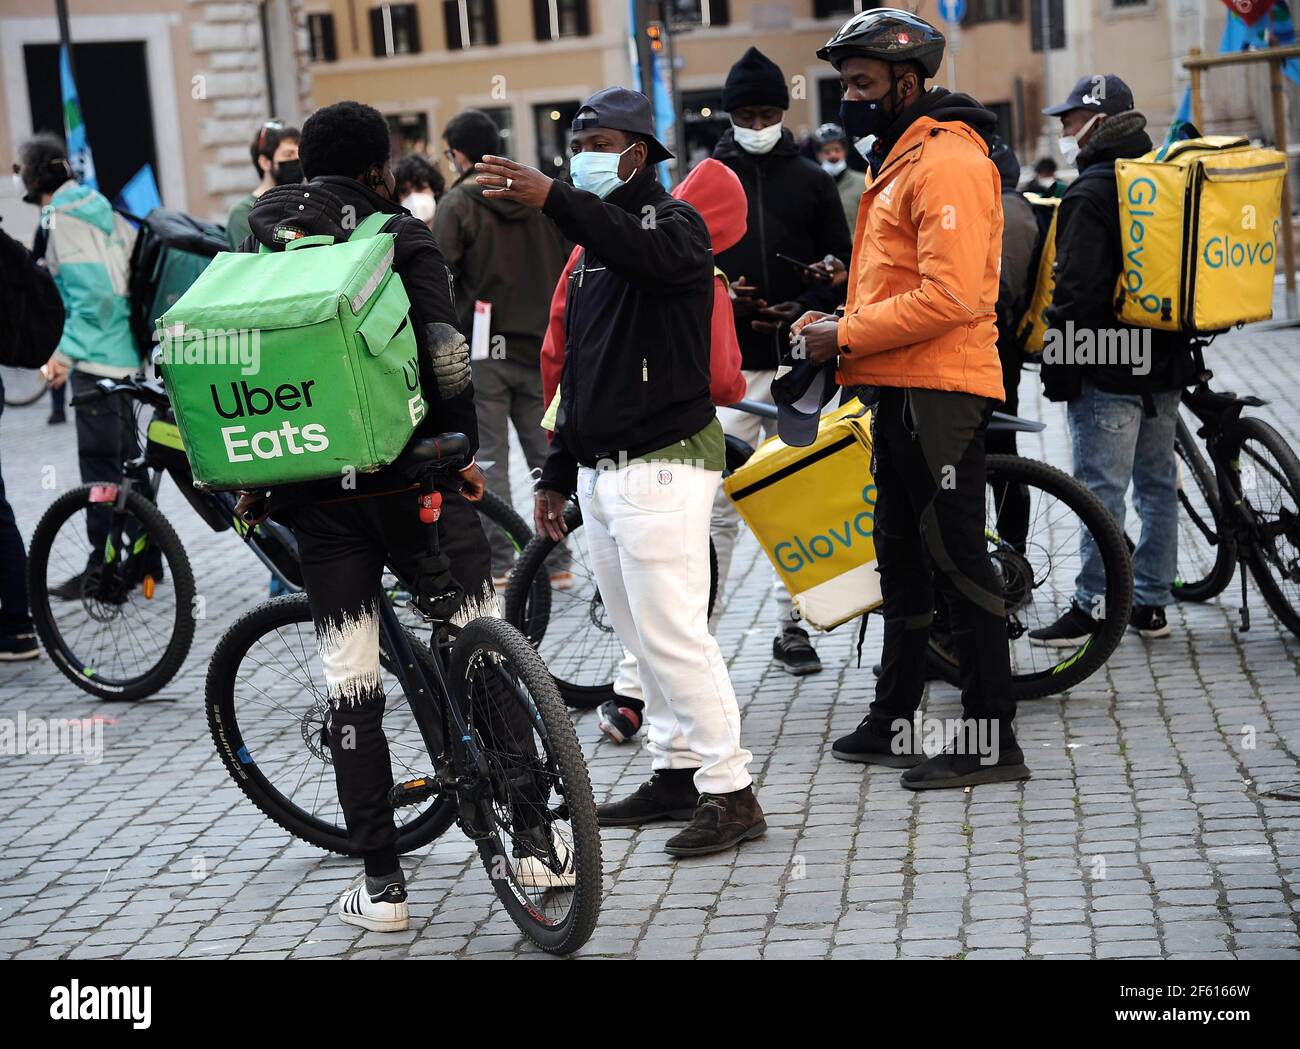 Italia, Roma, 26 marzo 2021 : 'Nessun giorno di consegna'. Dimostrazione di protesta da parte di 'food riders' e consegna fattorini a casa. Foto © Fabio Cimaglia/Sintes Foto Stock